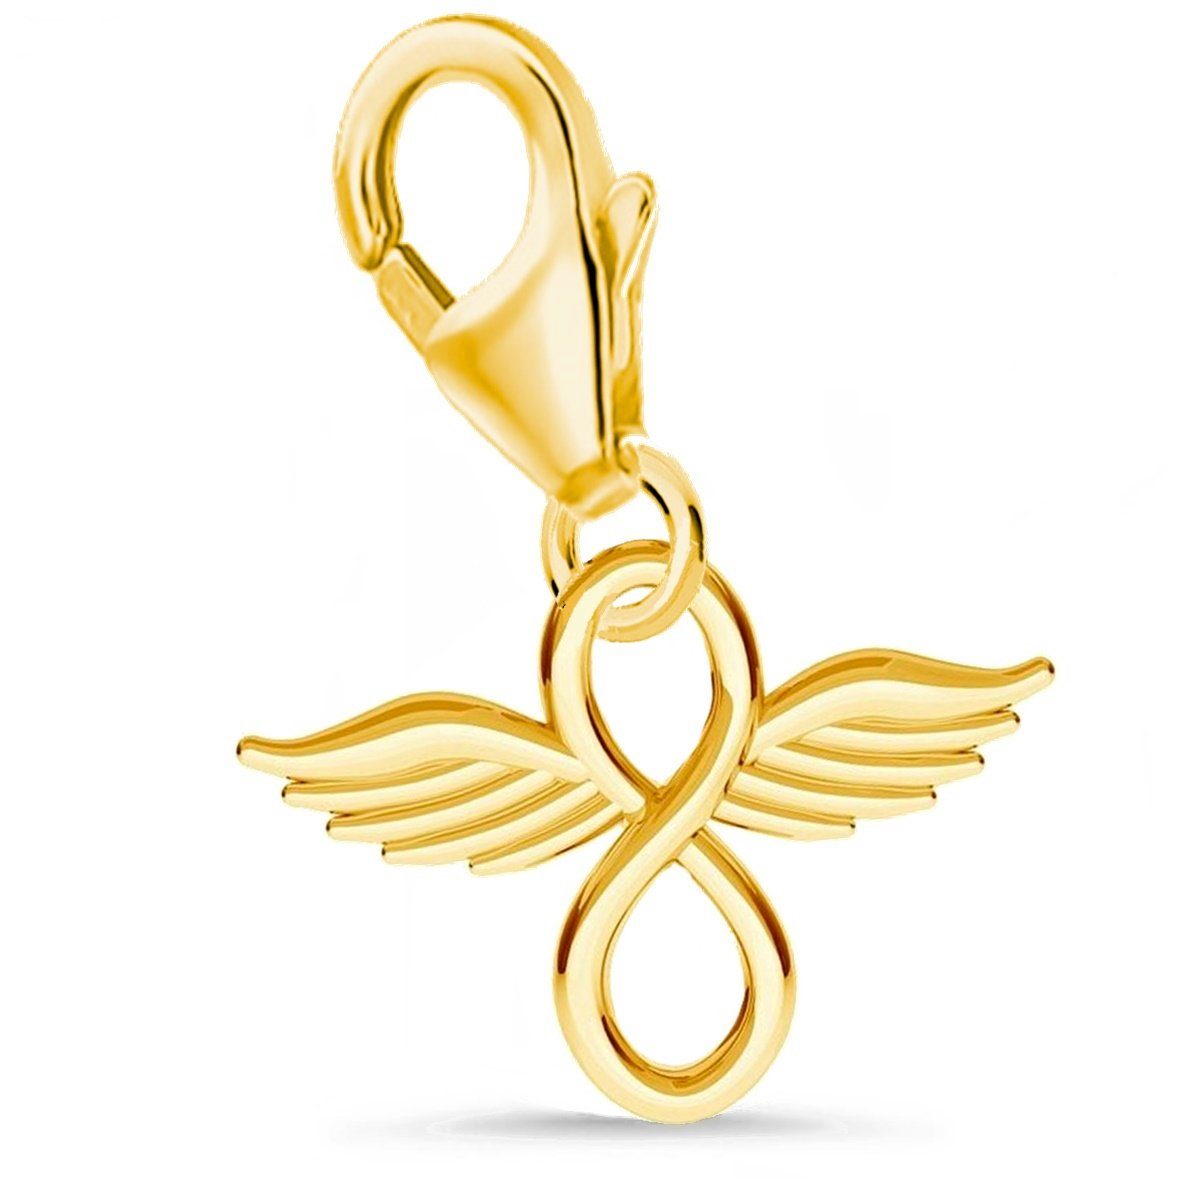 Goldene Hufeisen Charm Flügel Unendlichkeit mit Flügel Karabiner Charm Anhänger 925 Silber